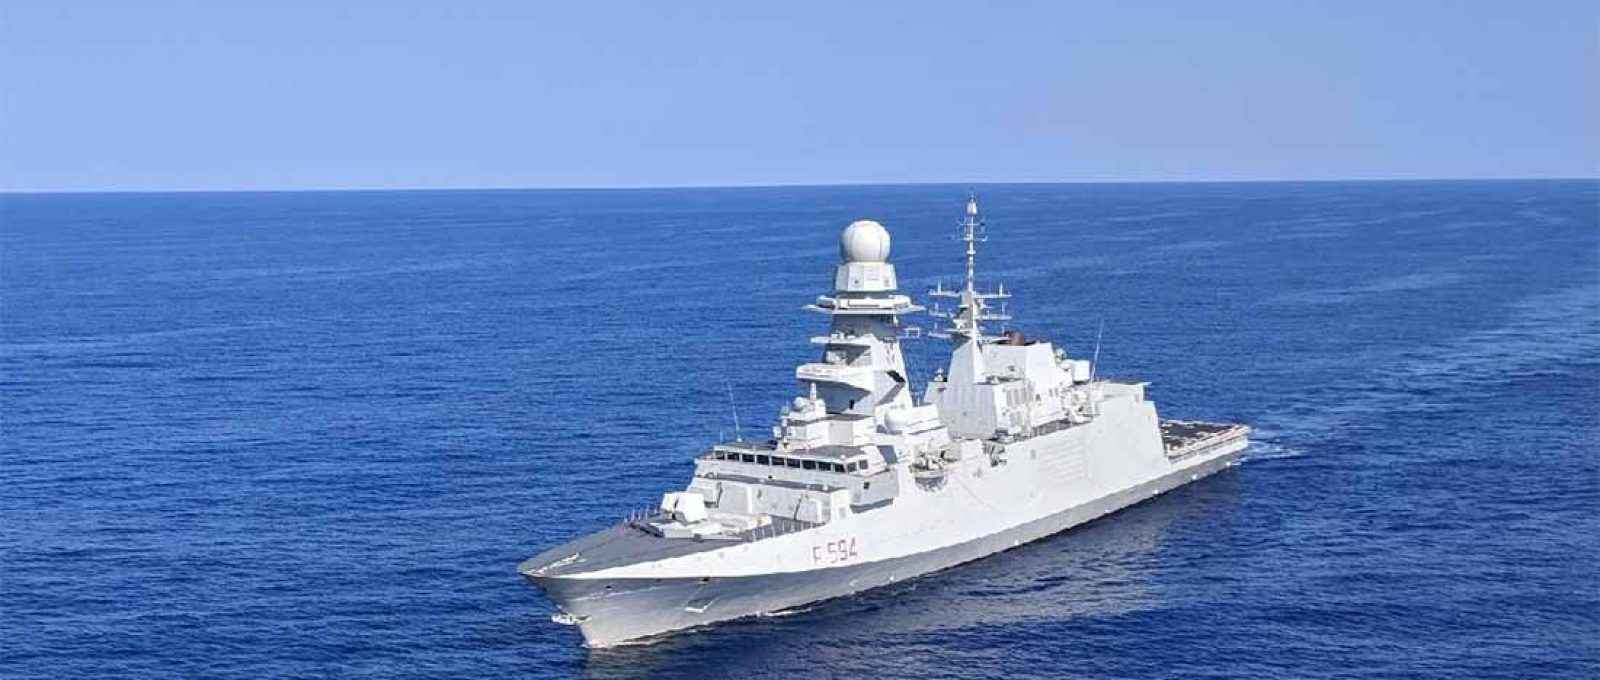 A futura fragata da US Navy é baseada na FREMM italiana, mostrada nesta foto navegando na costa da Virgínia durante sua implantação em 2018 (Foto: Defense News).